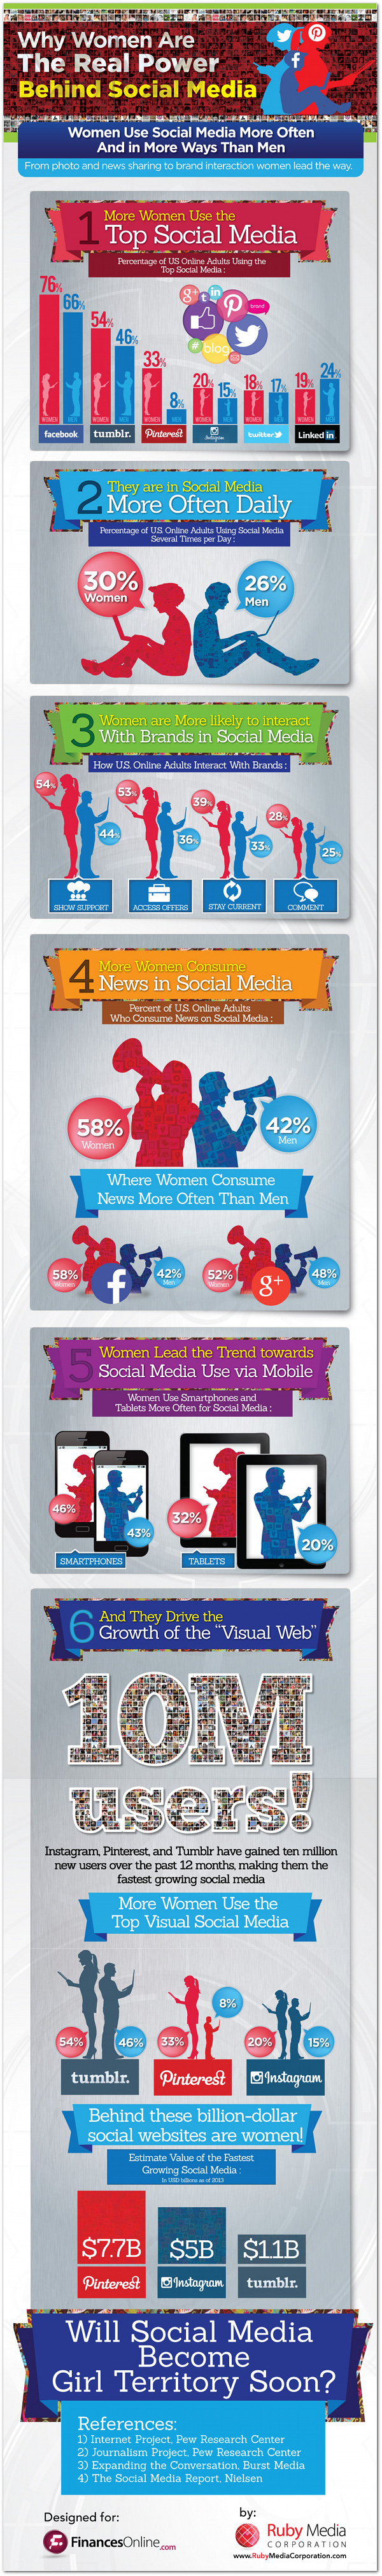 women-power-social-media-infographic